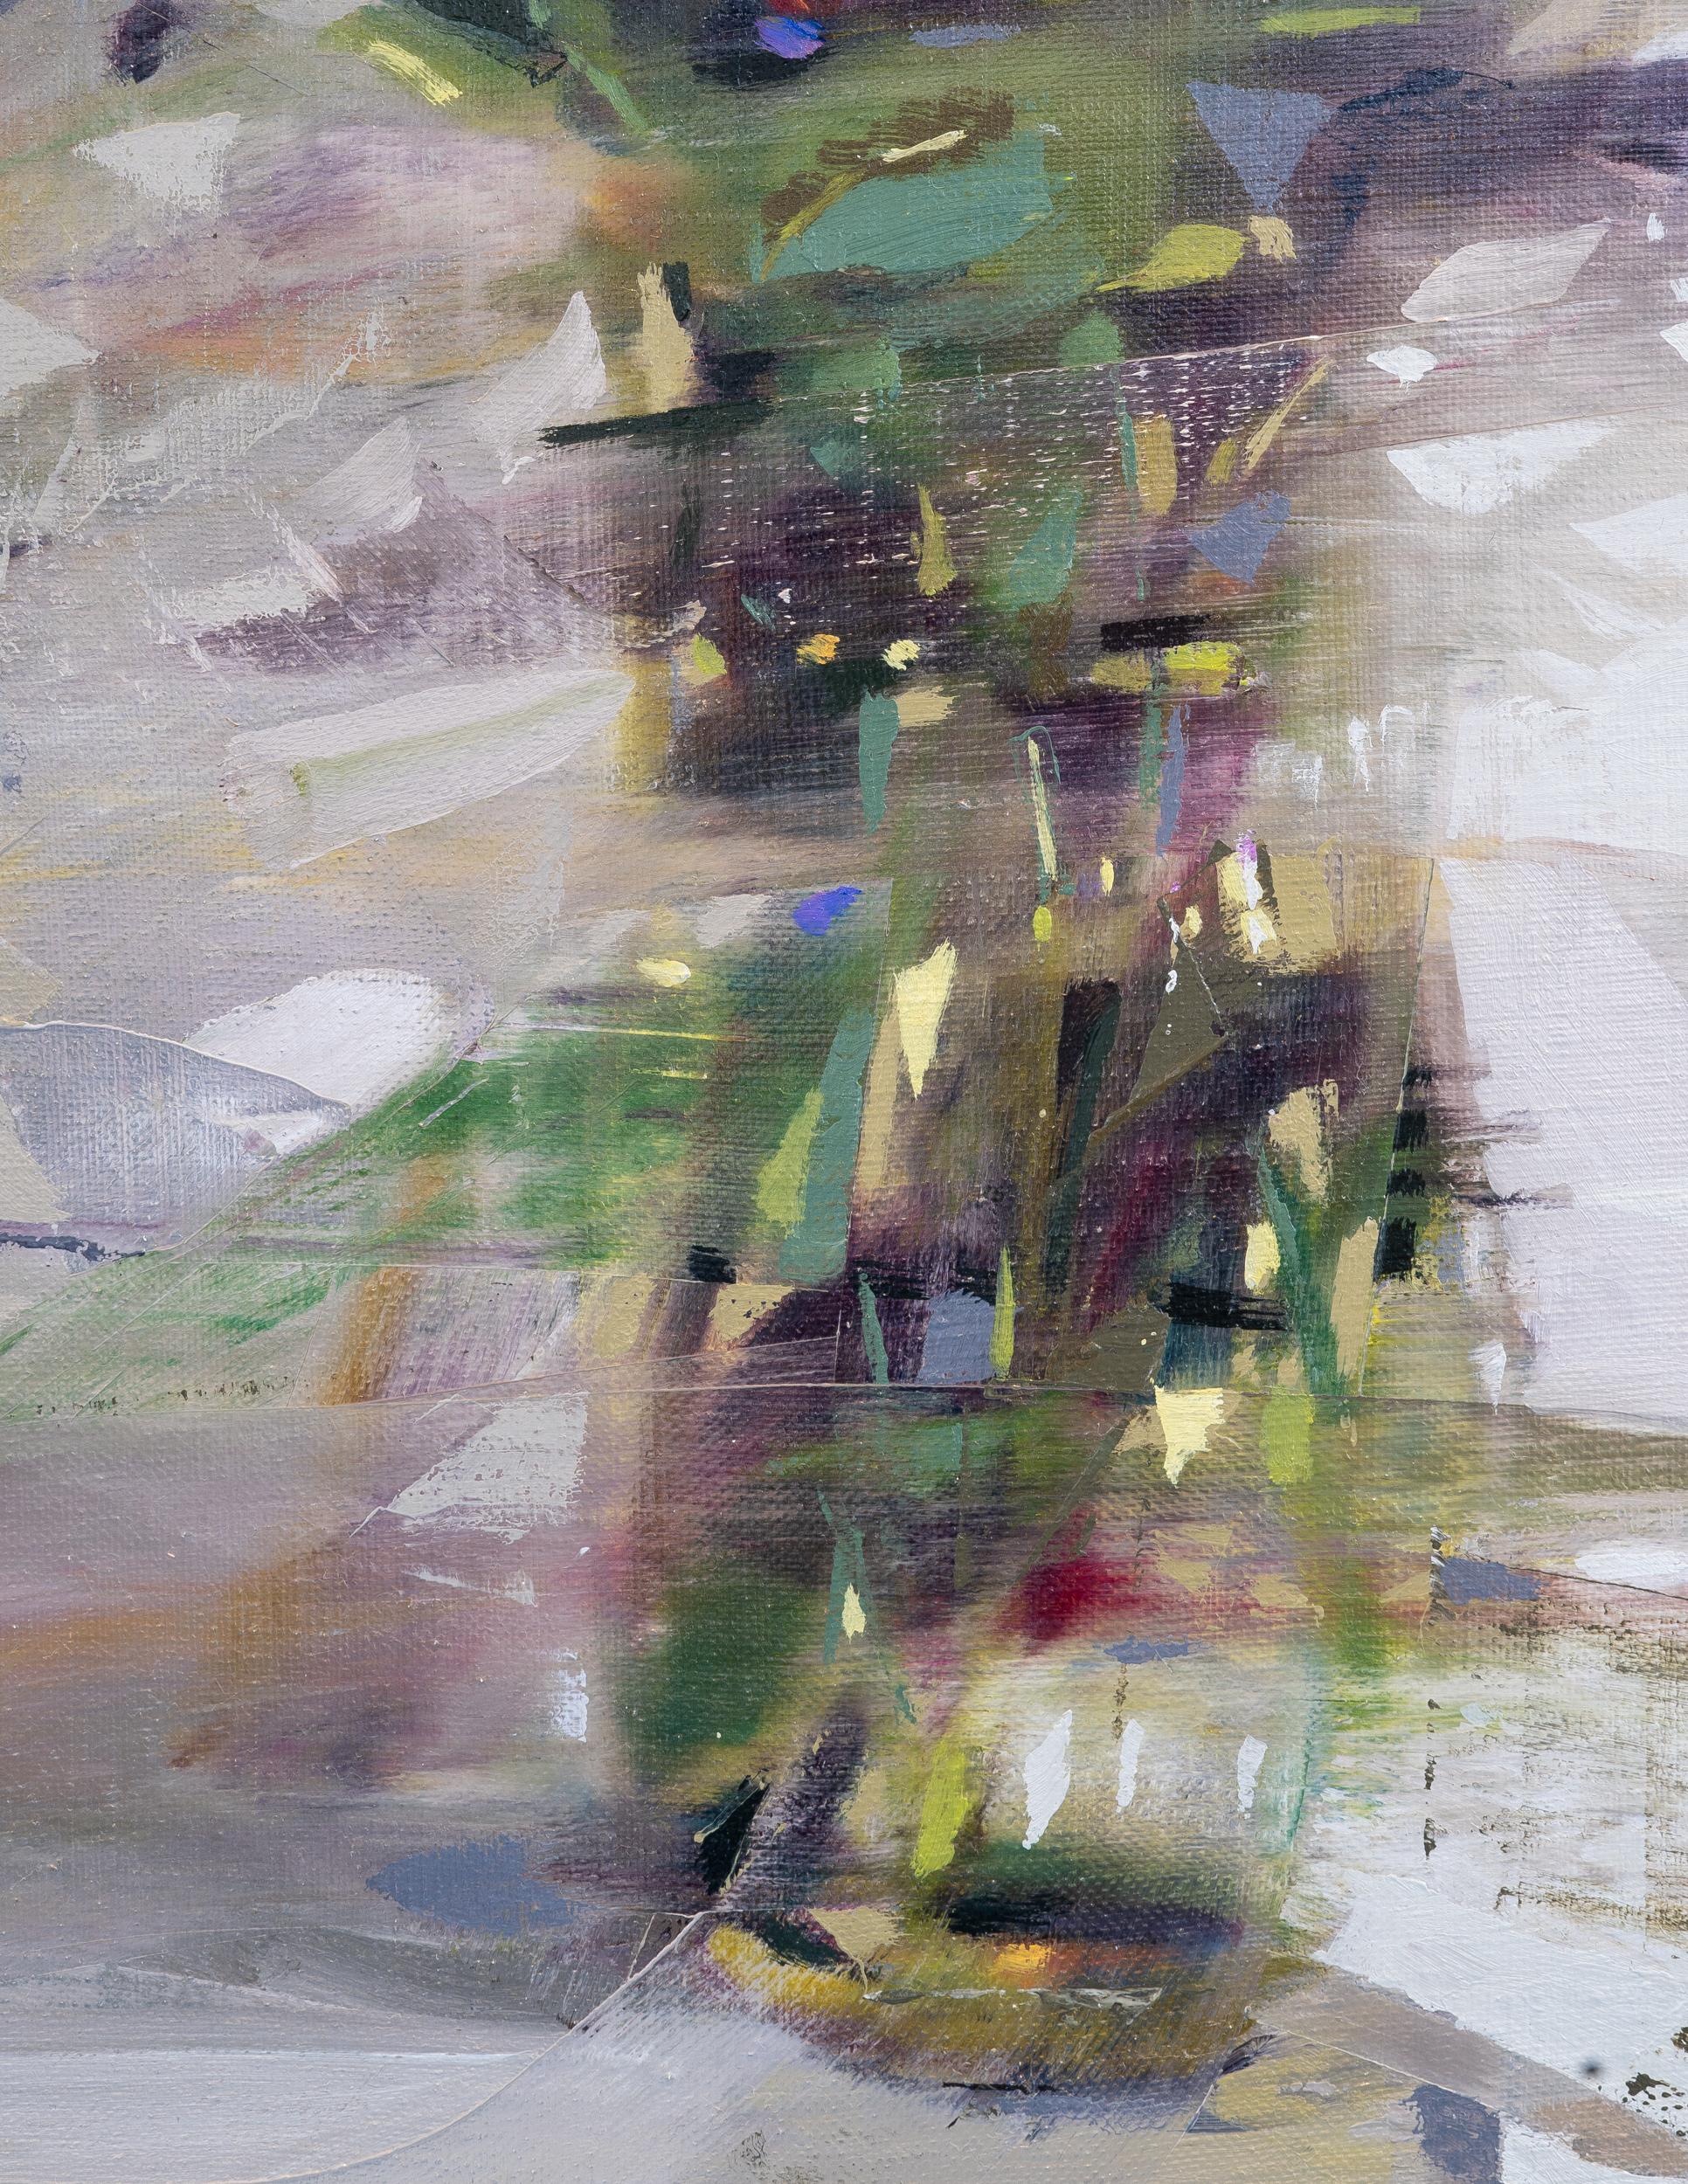 DWELL - Peinture expressionniste à l'huile sur toile représentant des fleurs dans un vase sur une table - Contemporain Painting par Jered Sprecher